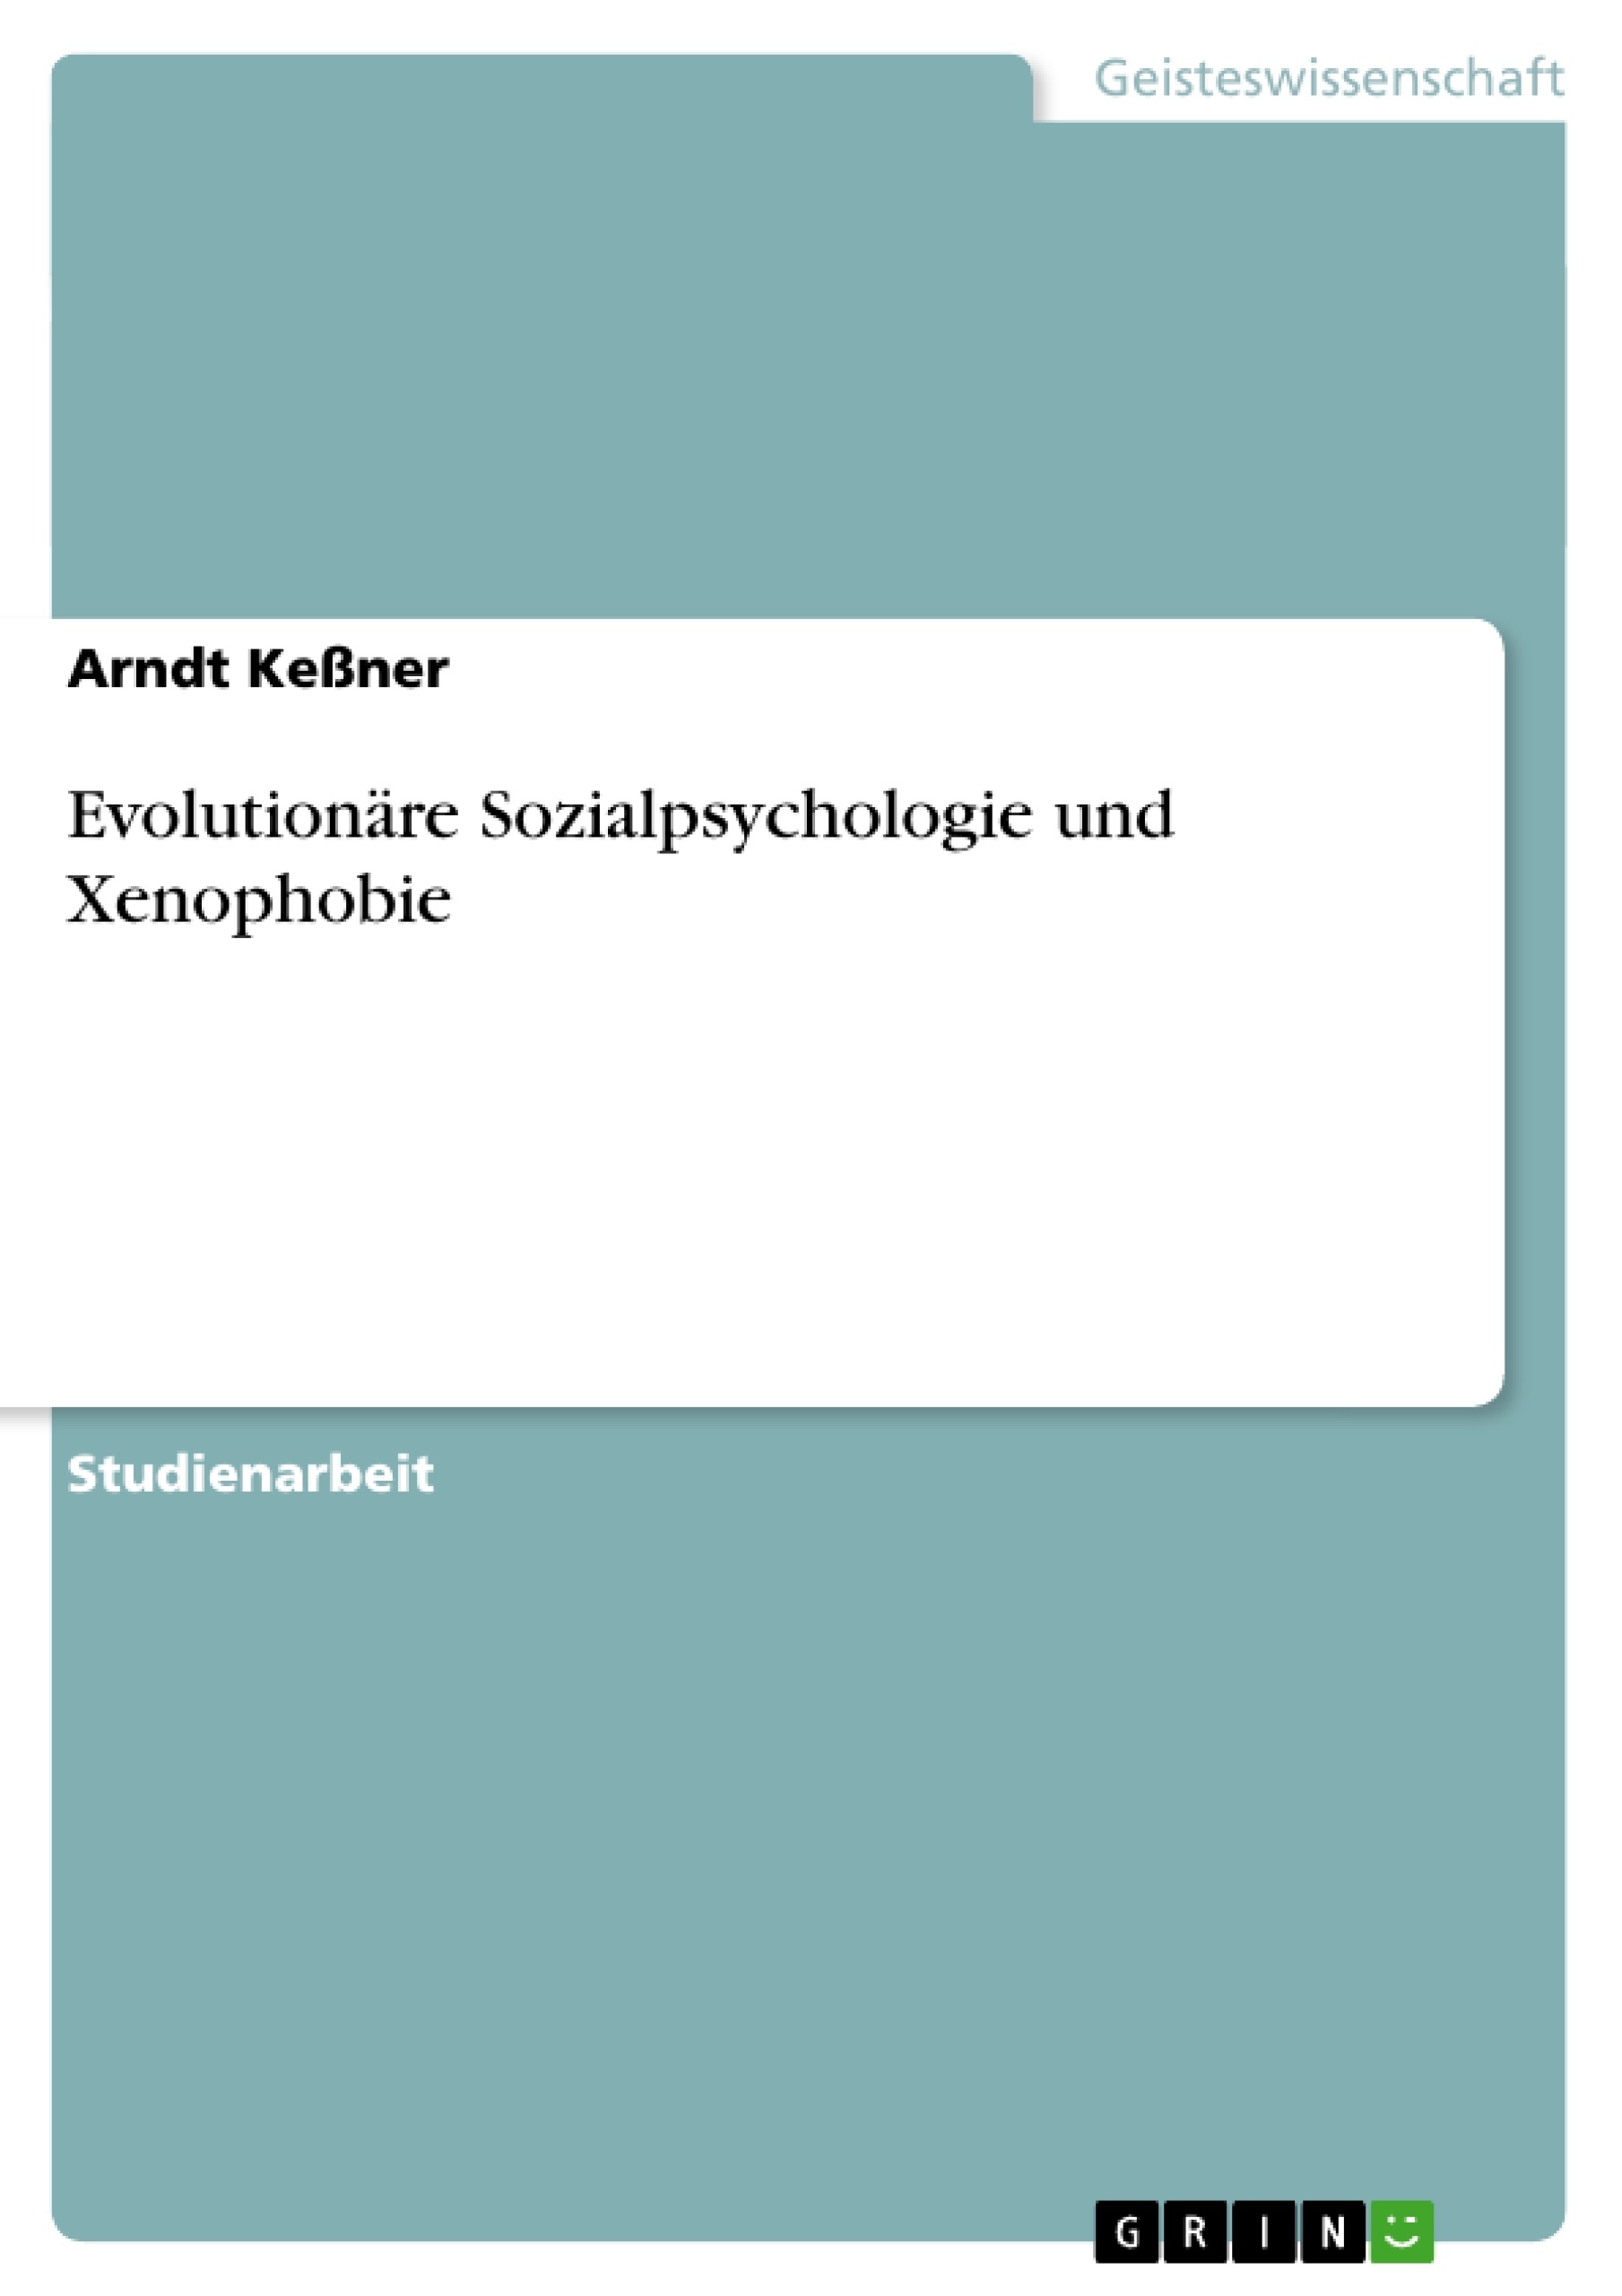 Title: Evolutionäre Sozialpsychologie und Xenophobie